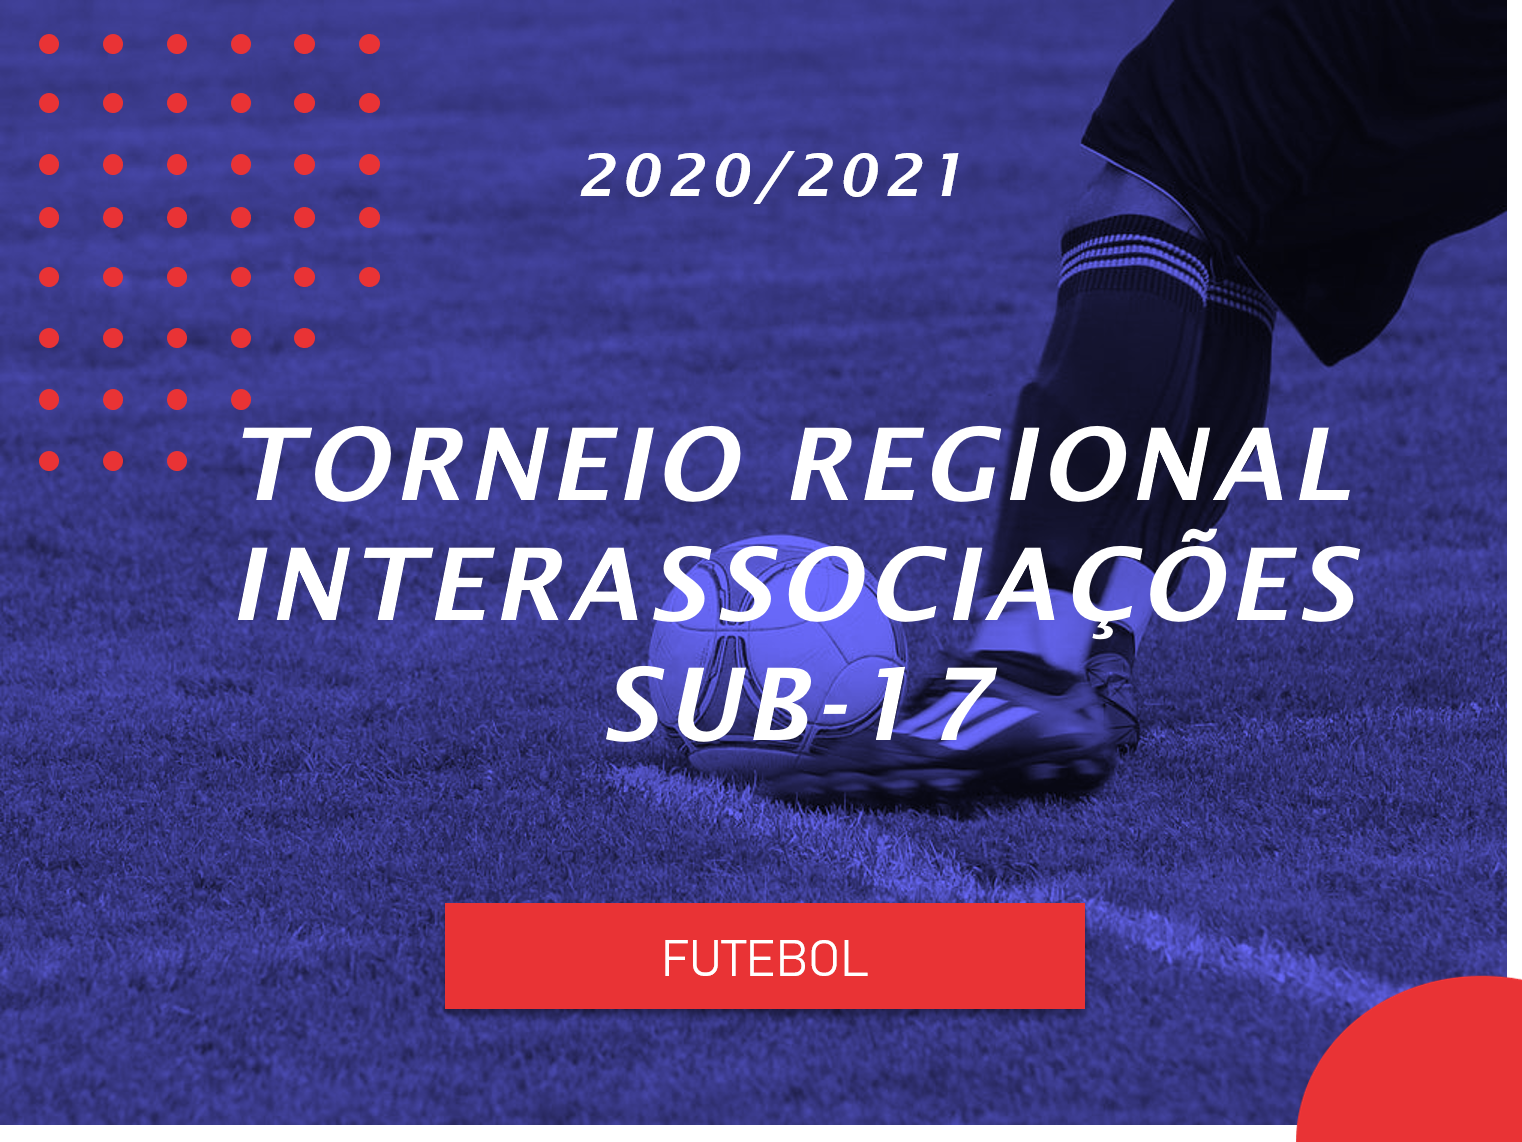 Torneio Regional Interassociações - Sub17 - Futebol